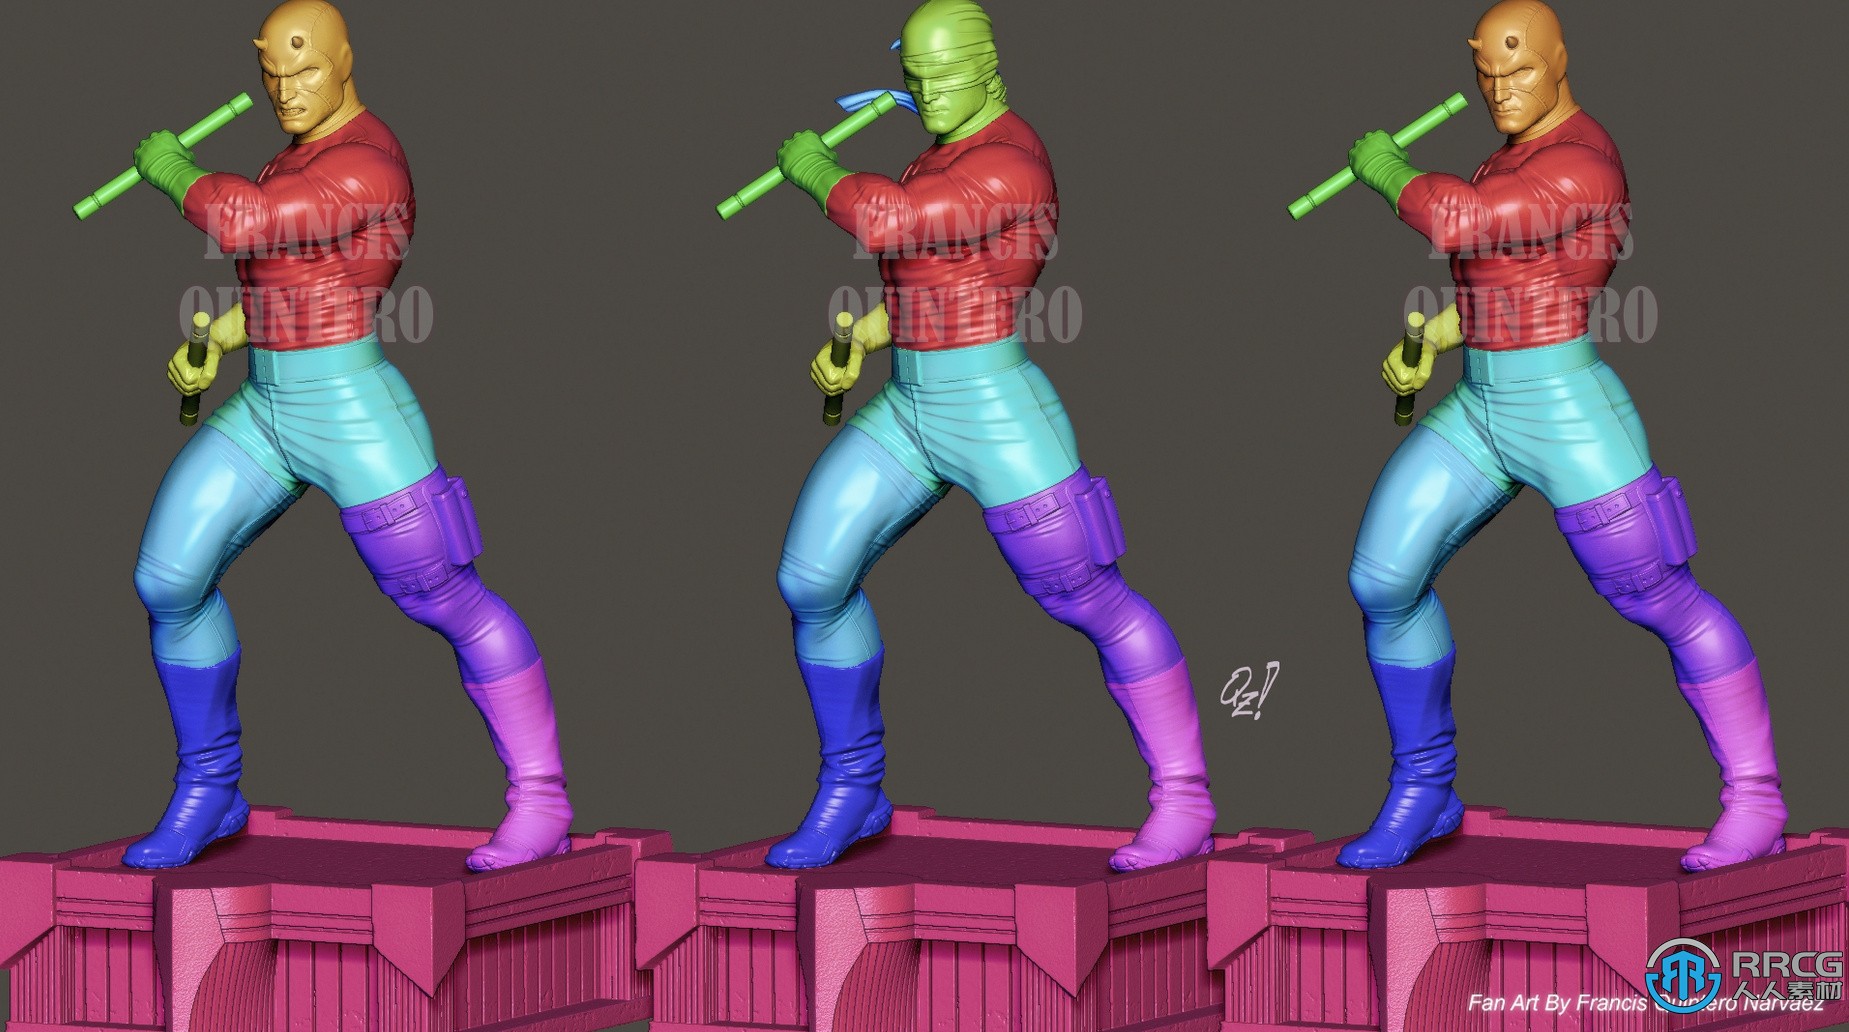 夜魔侠超胆侠漫威动漫影视角色雕塑3D打印模型